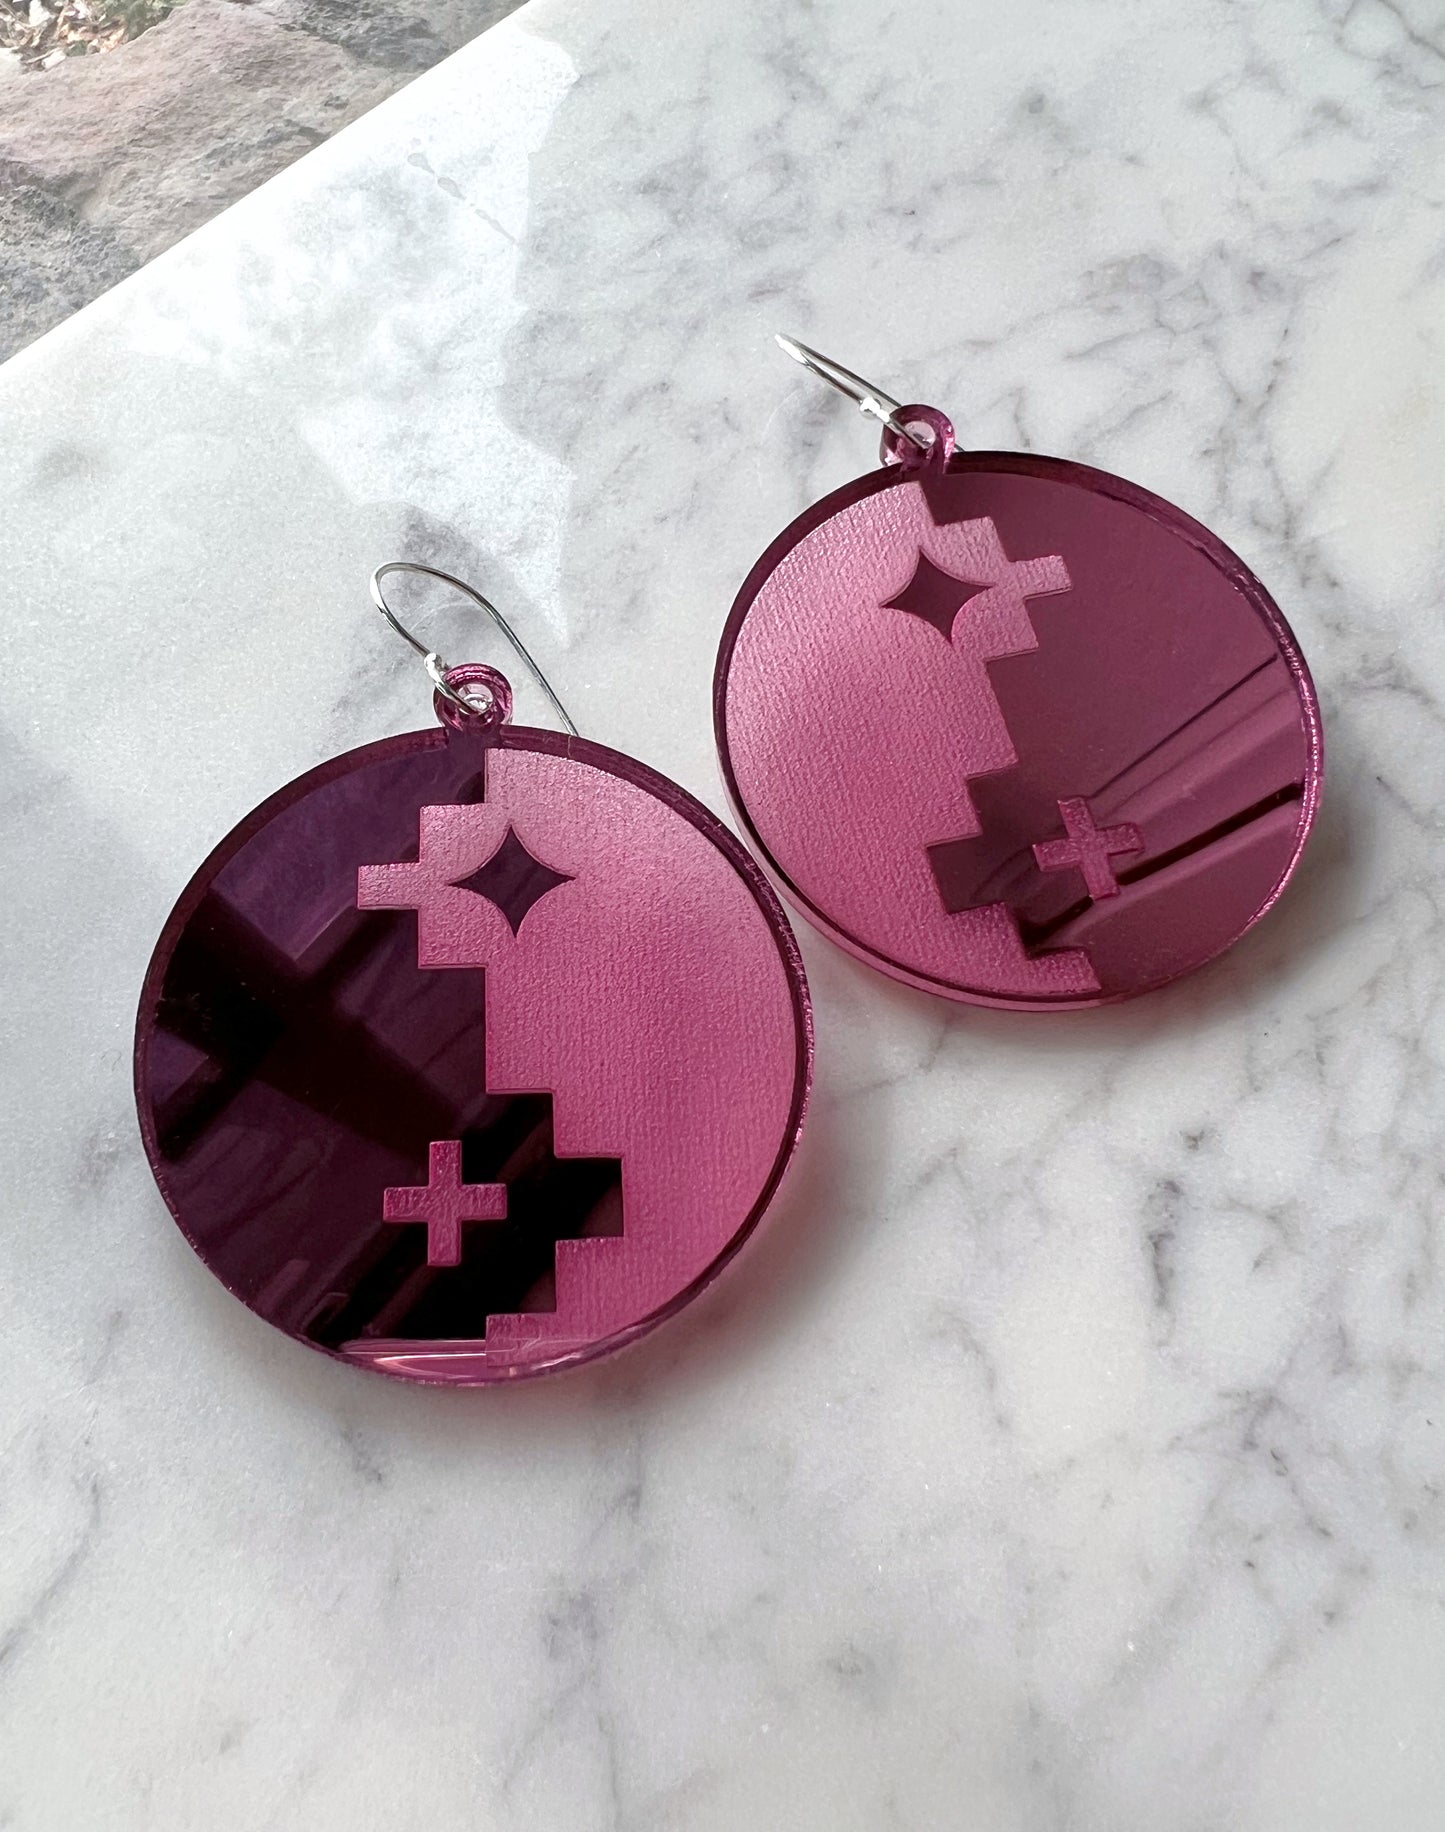 Hózhó earrings in pink